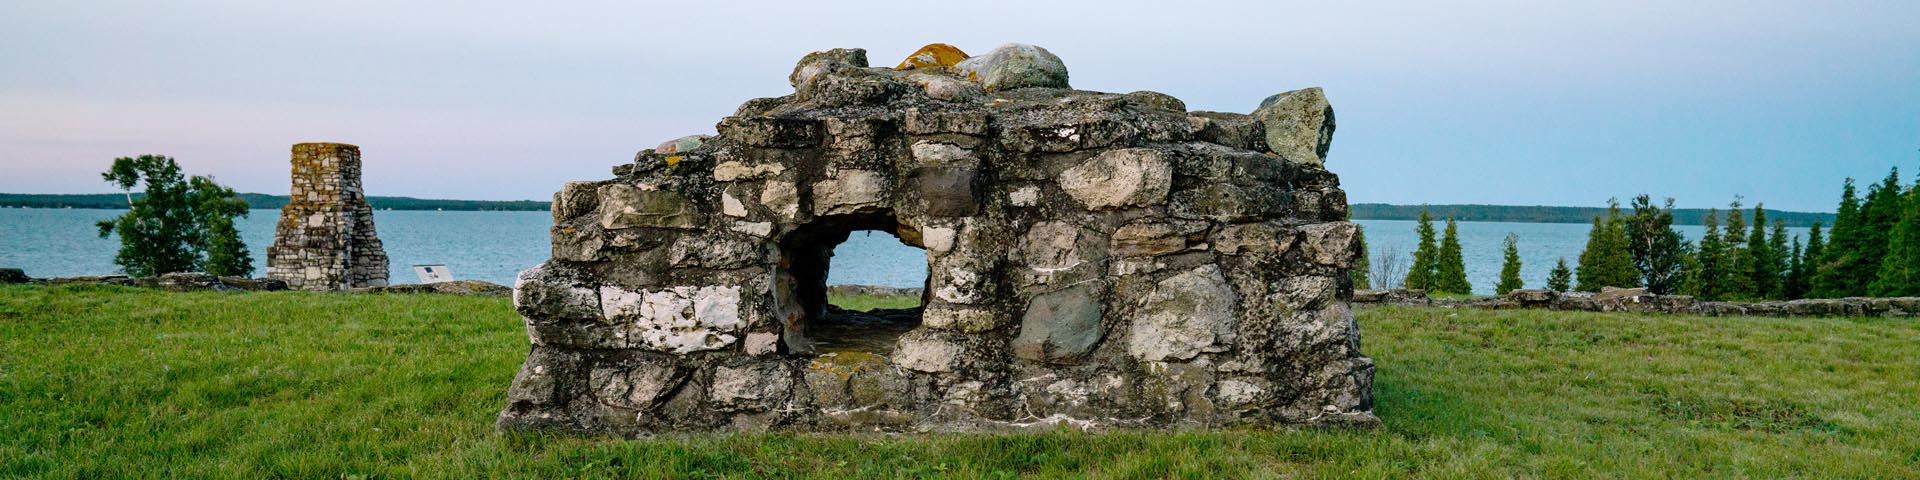 Ruines du lieu historique national du Fort-St. Joseph sur les rives du lac Huron